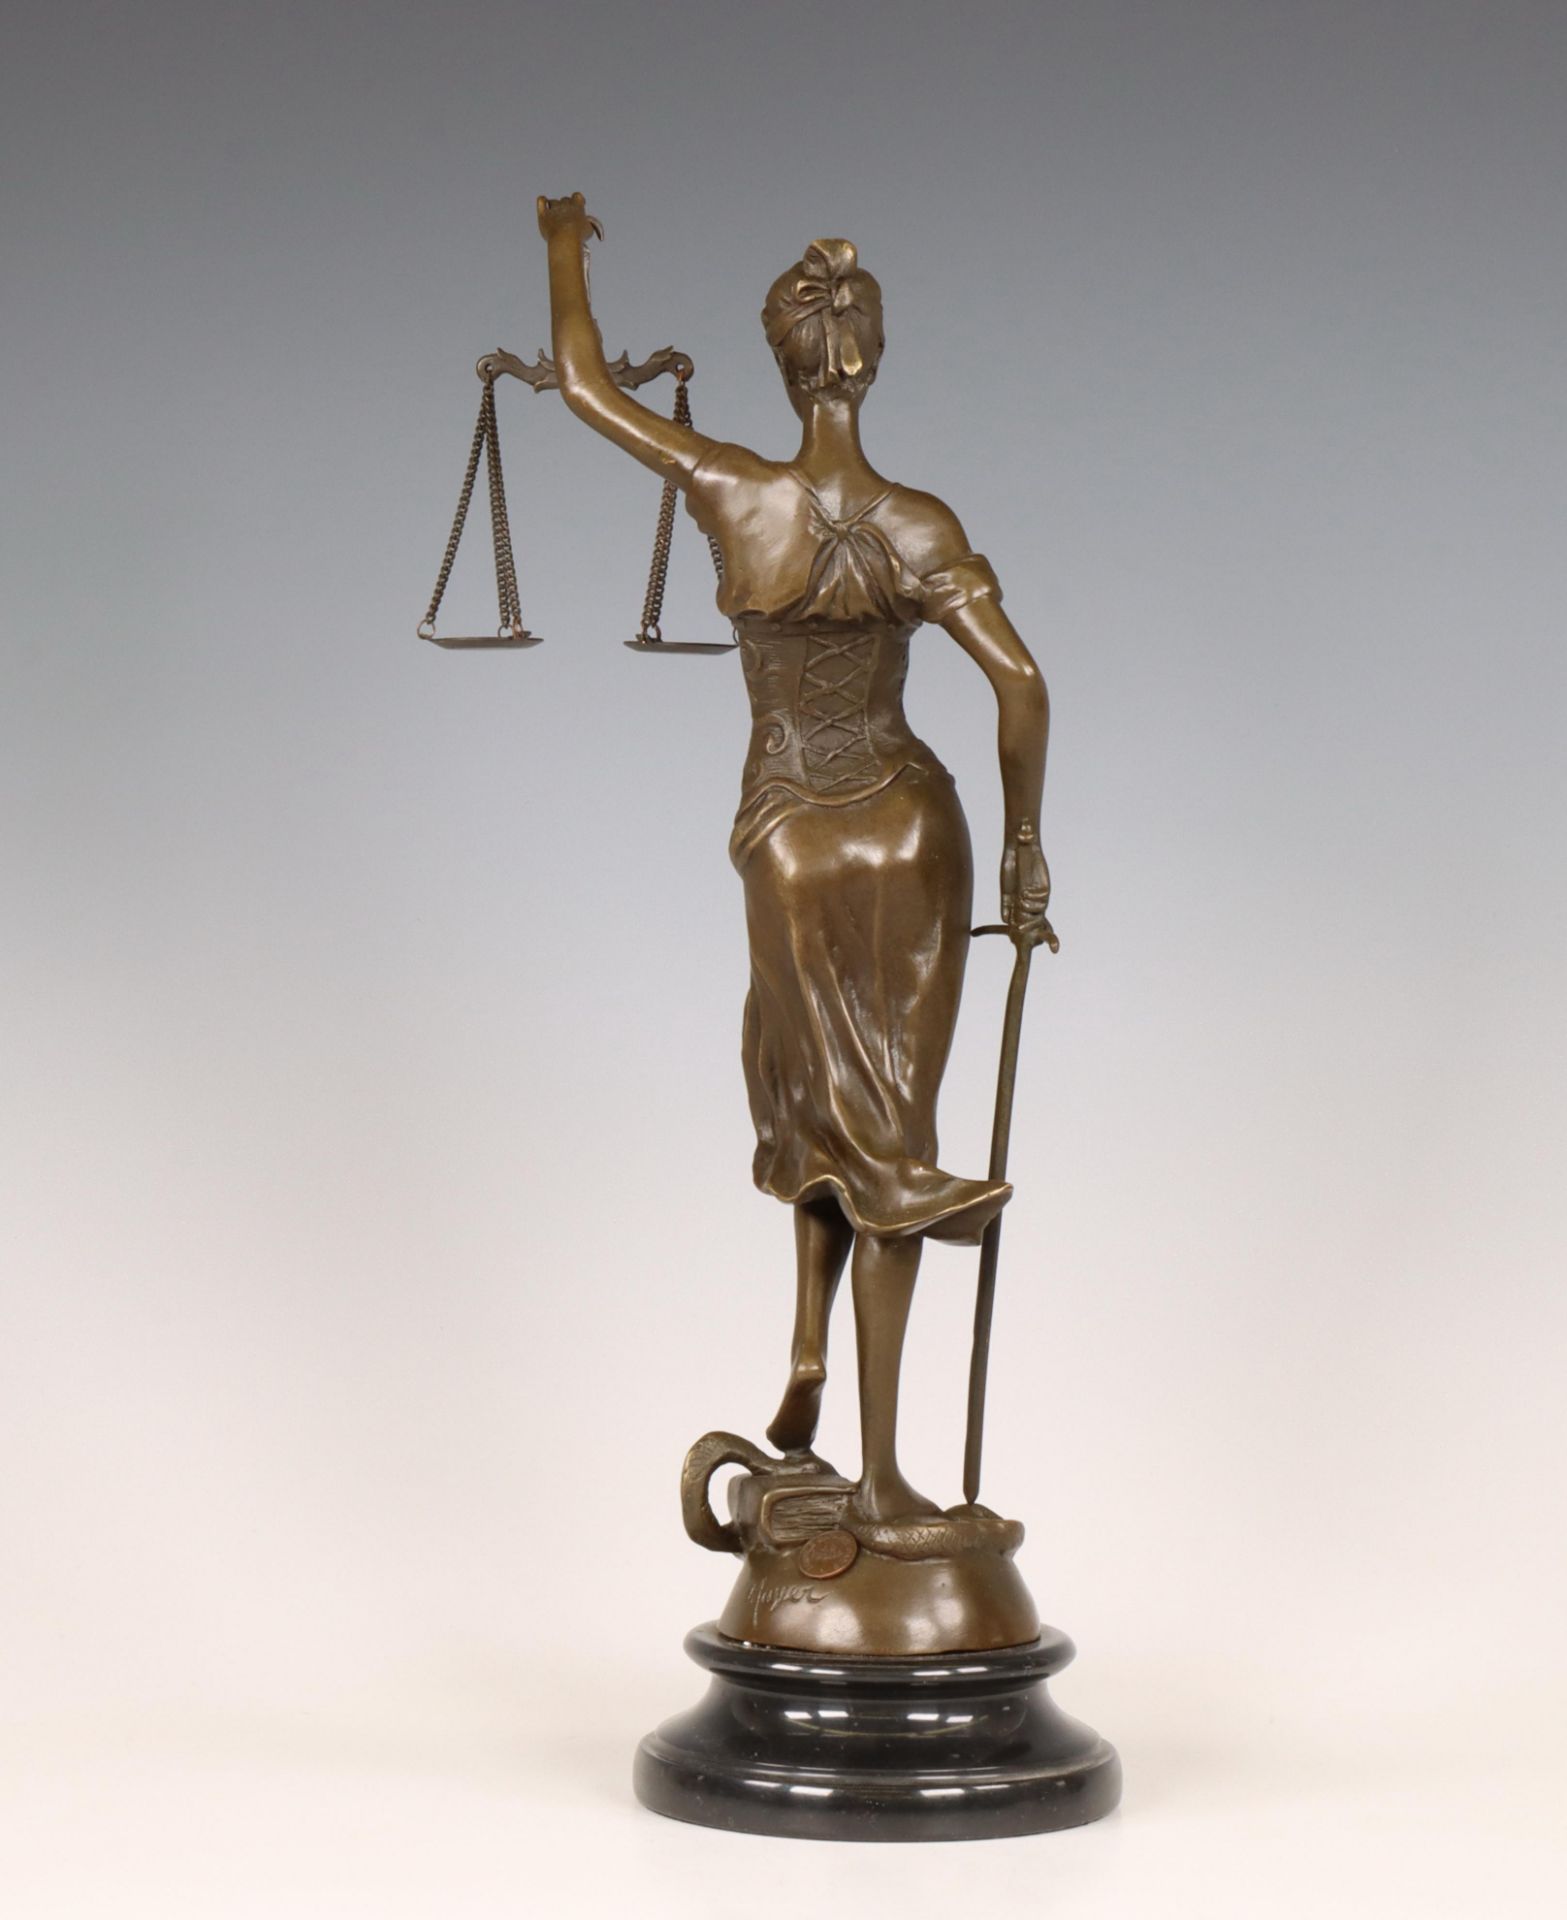 Gebronsd metalen vormstuk Vrouwe Justitia, 20e eeuw; - Bild 2 aus 2